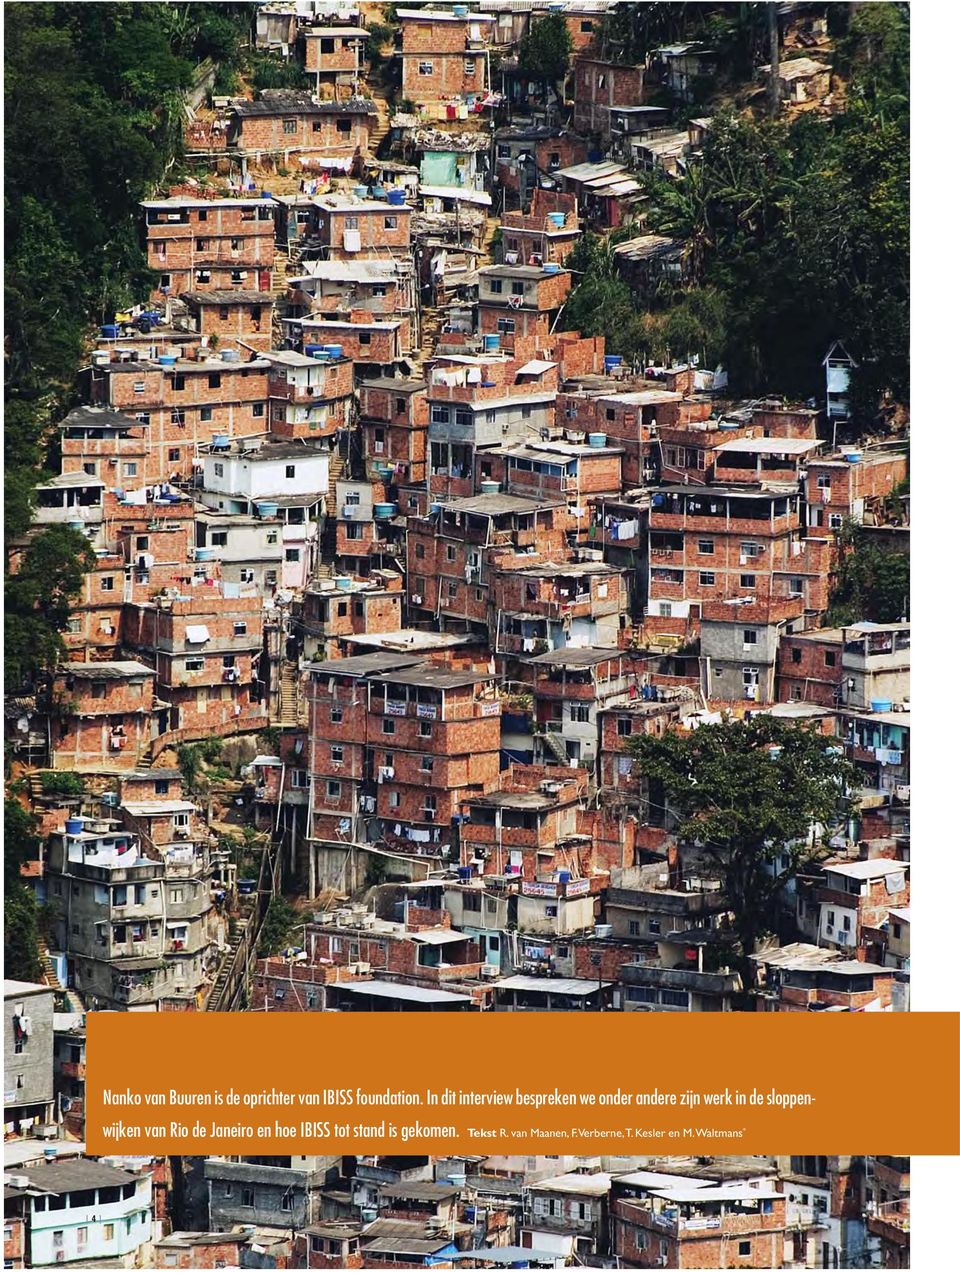 sloppenwijken van Rio de Janeiro en hoe IBISS tot stand is